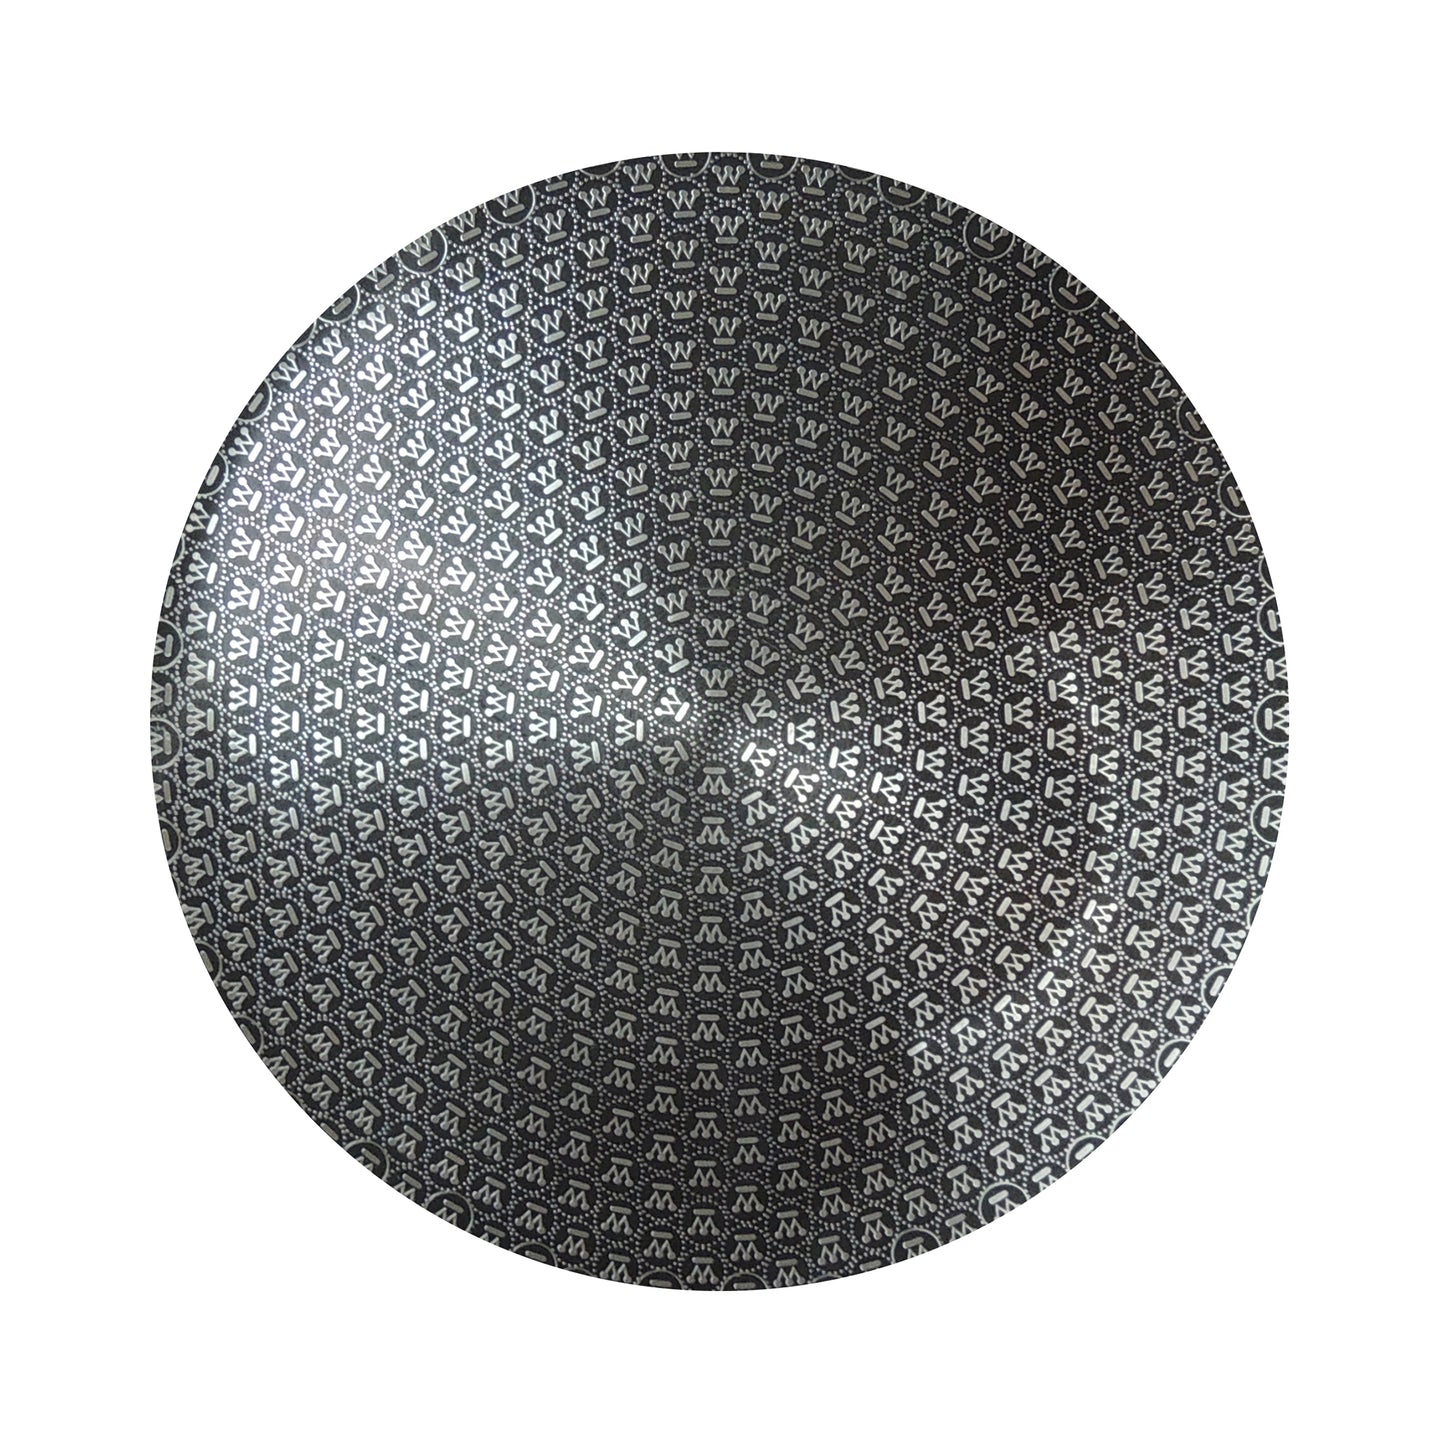 Arrocera Antiadherente Black Signature Acero Inoxidable Inducción Magnética Con Tapa De Cristal